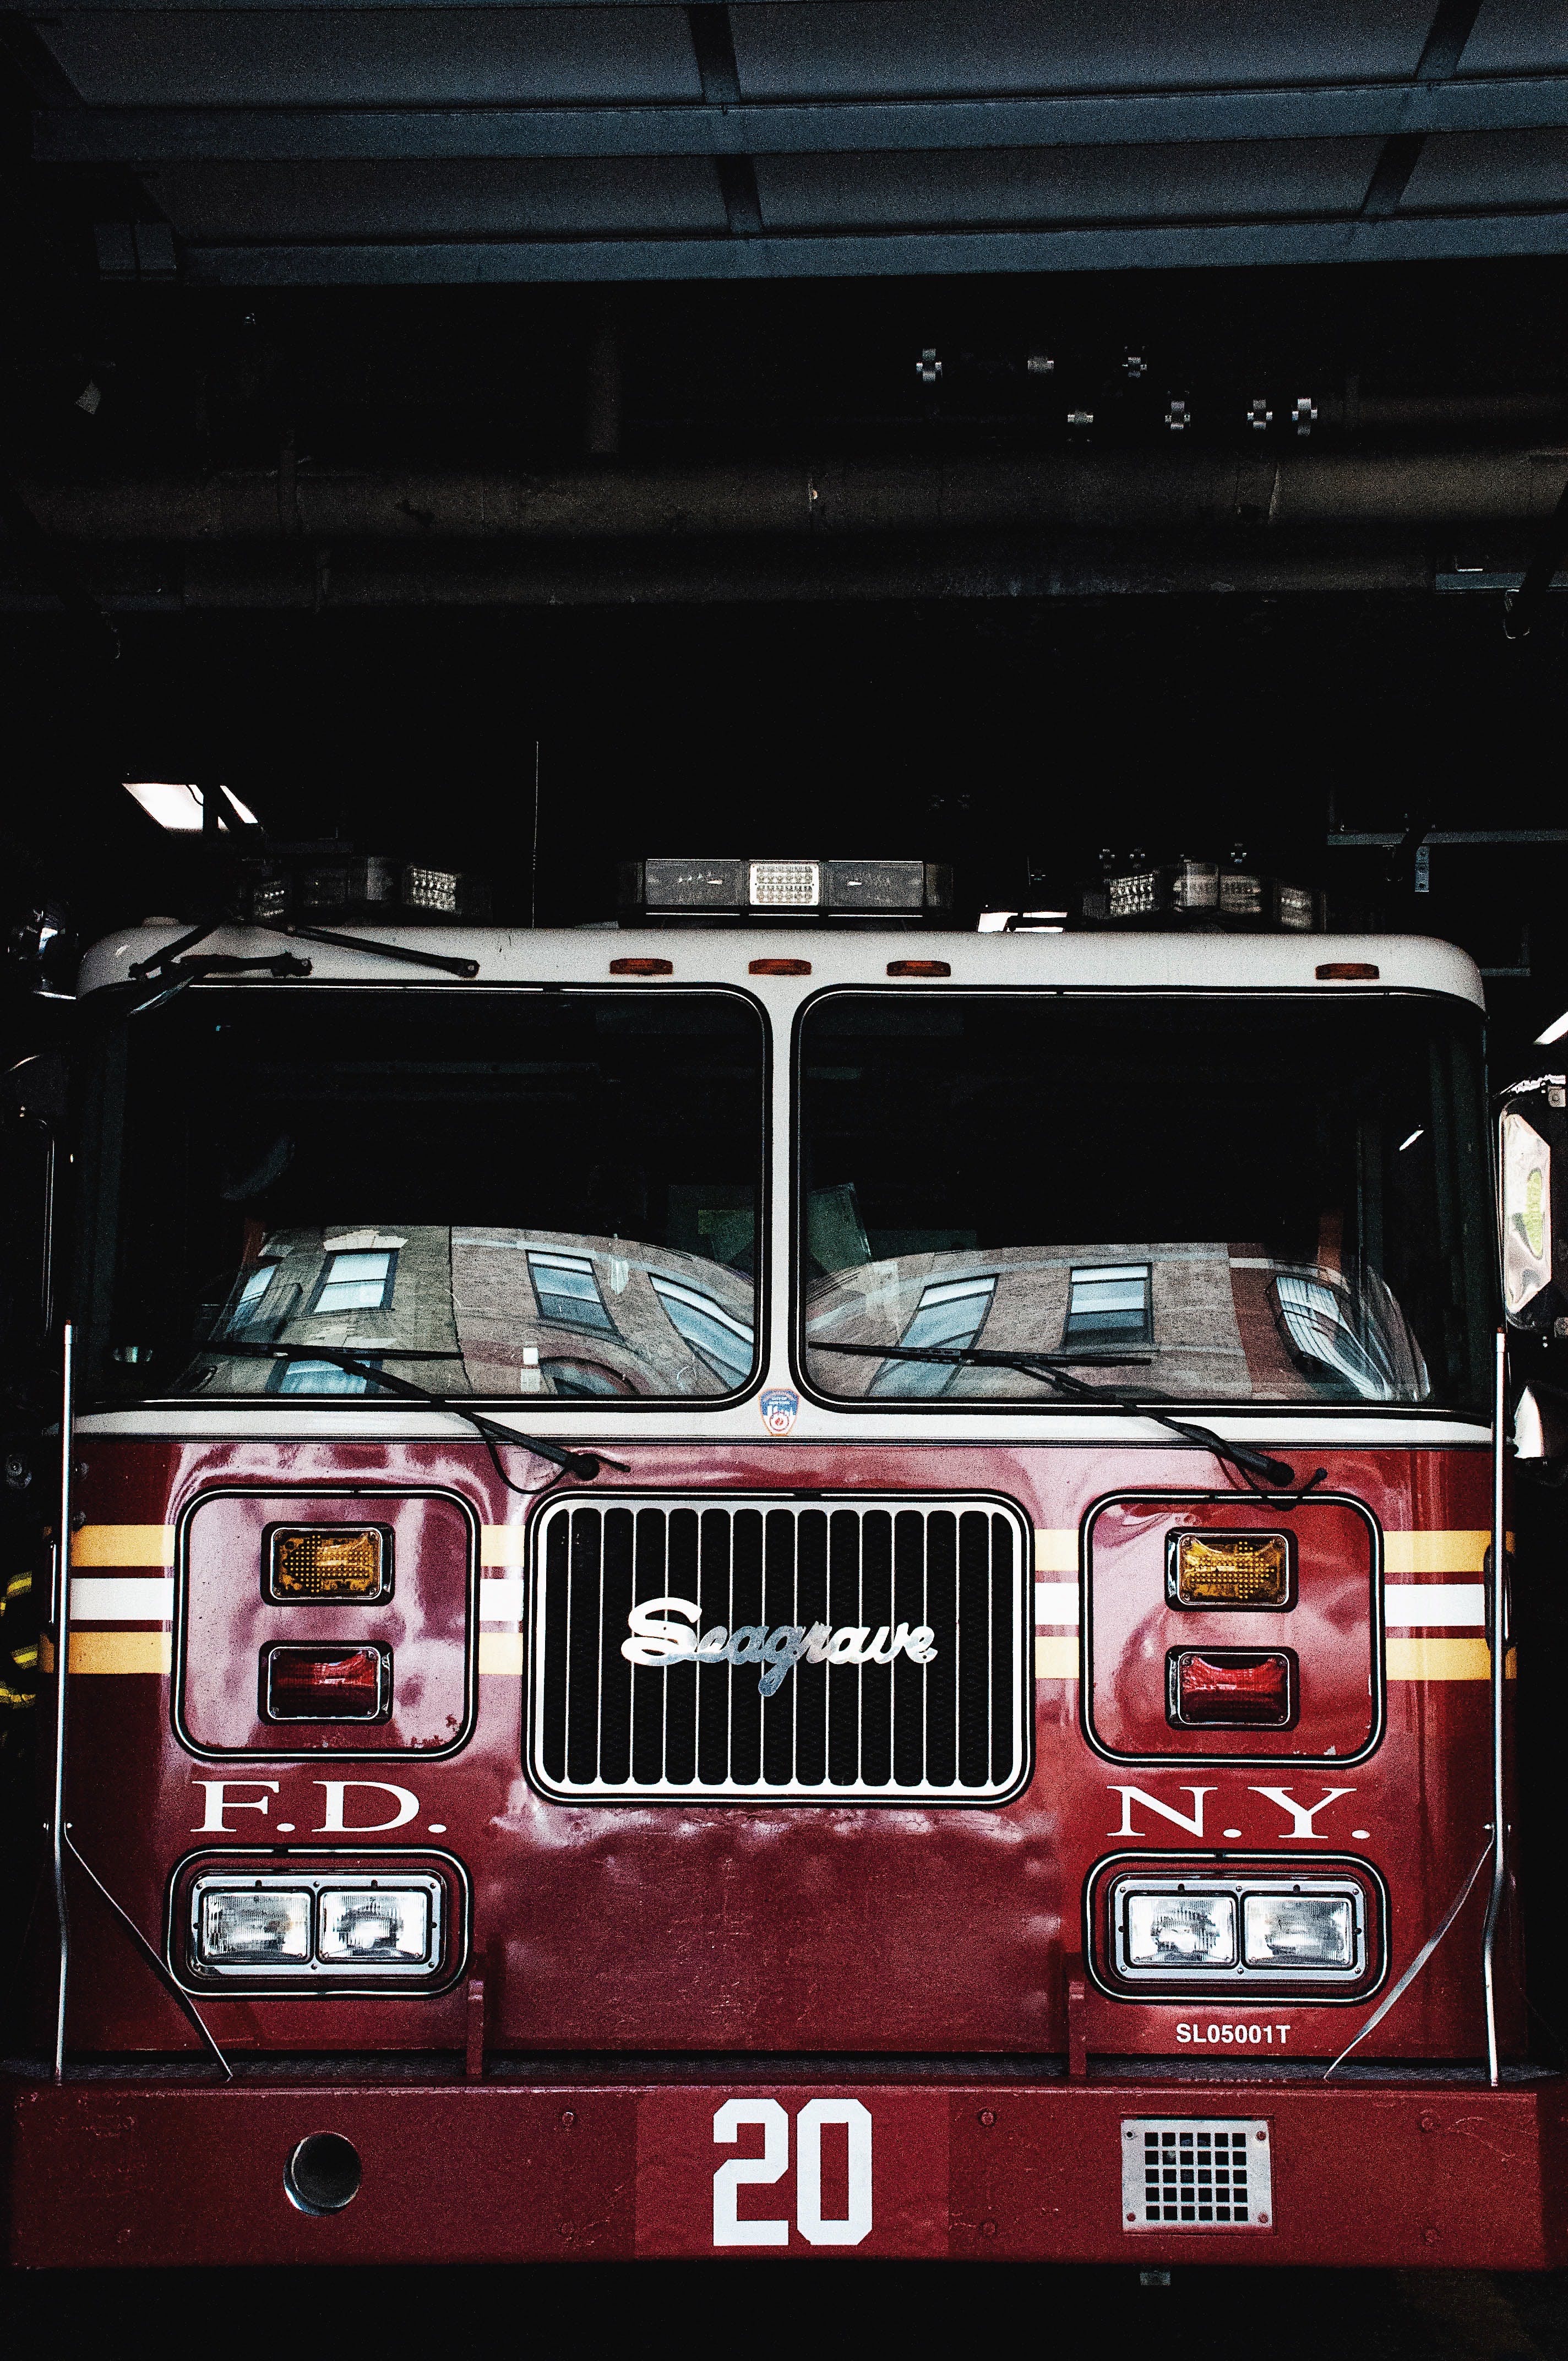  Magirus Hintergrundbild 2848x4288. Feuerwehrauto Bilder Und Fotos · Kostenlos Downloaden · Stock Fotos